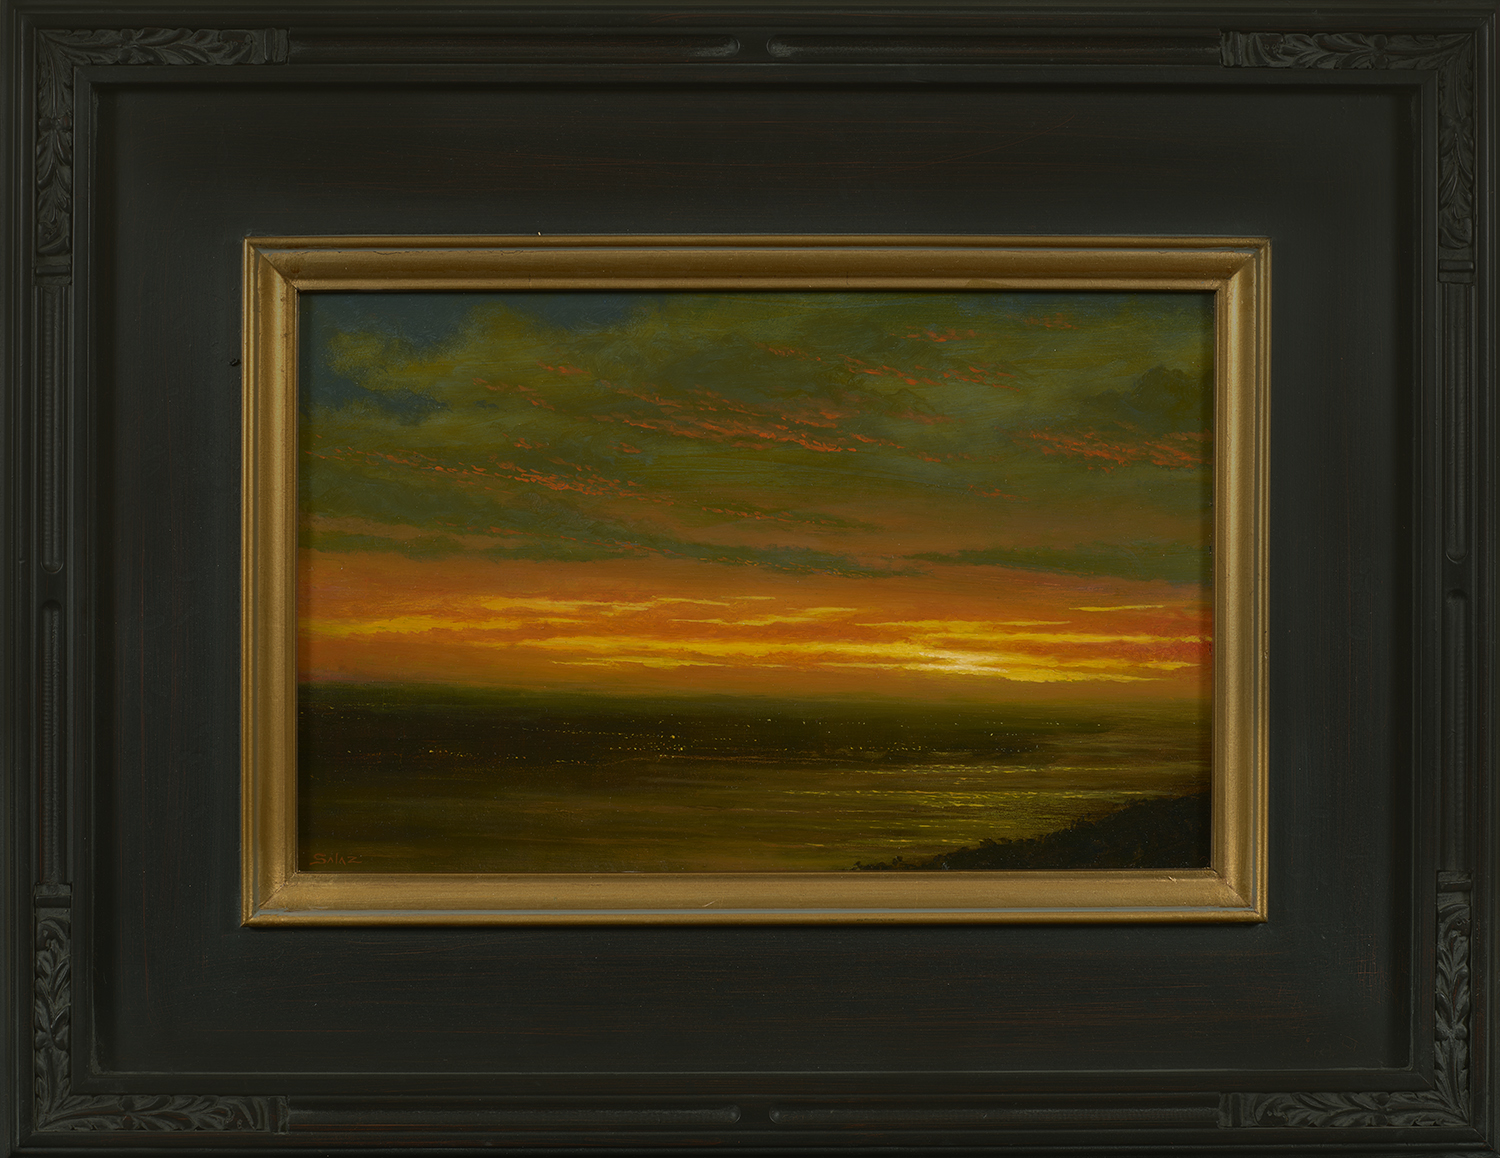 ken_salaz_kws1040__sunset_over_hudson_valley_framed.jpg